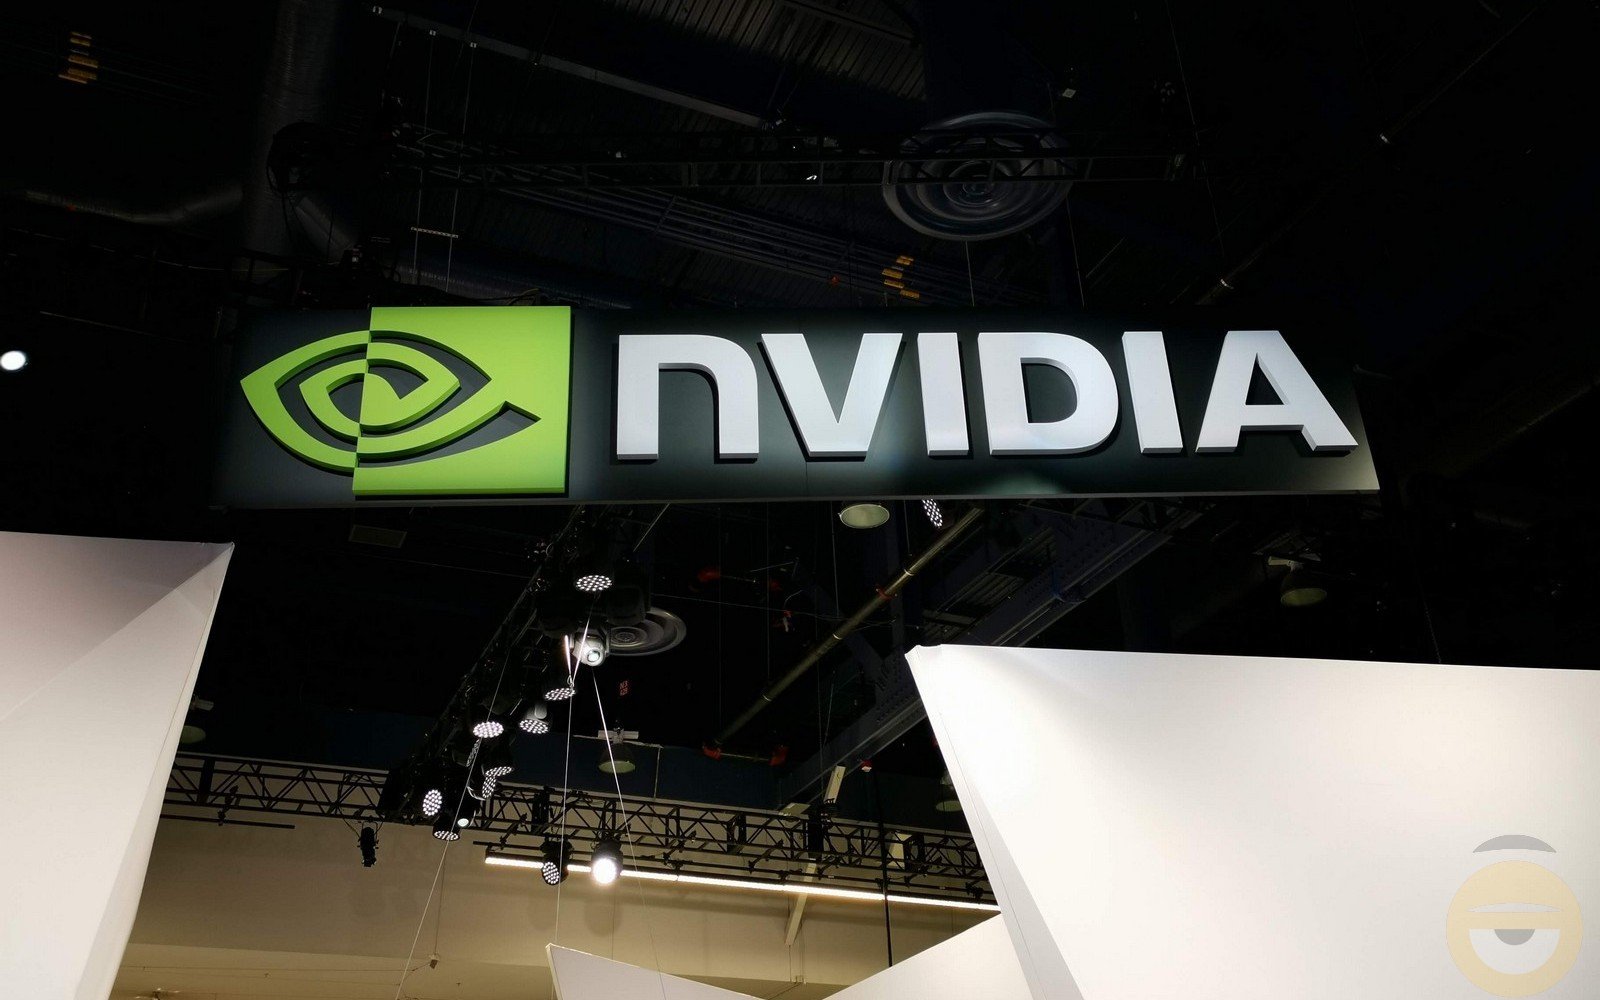 Η Nvidia υπόσχεται μεγάλη αύξηση των επιδόσεων σε DirectX 12 παιχνίδια με τους τελευταίους drivers